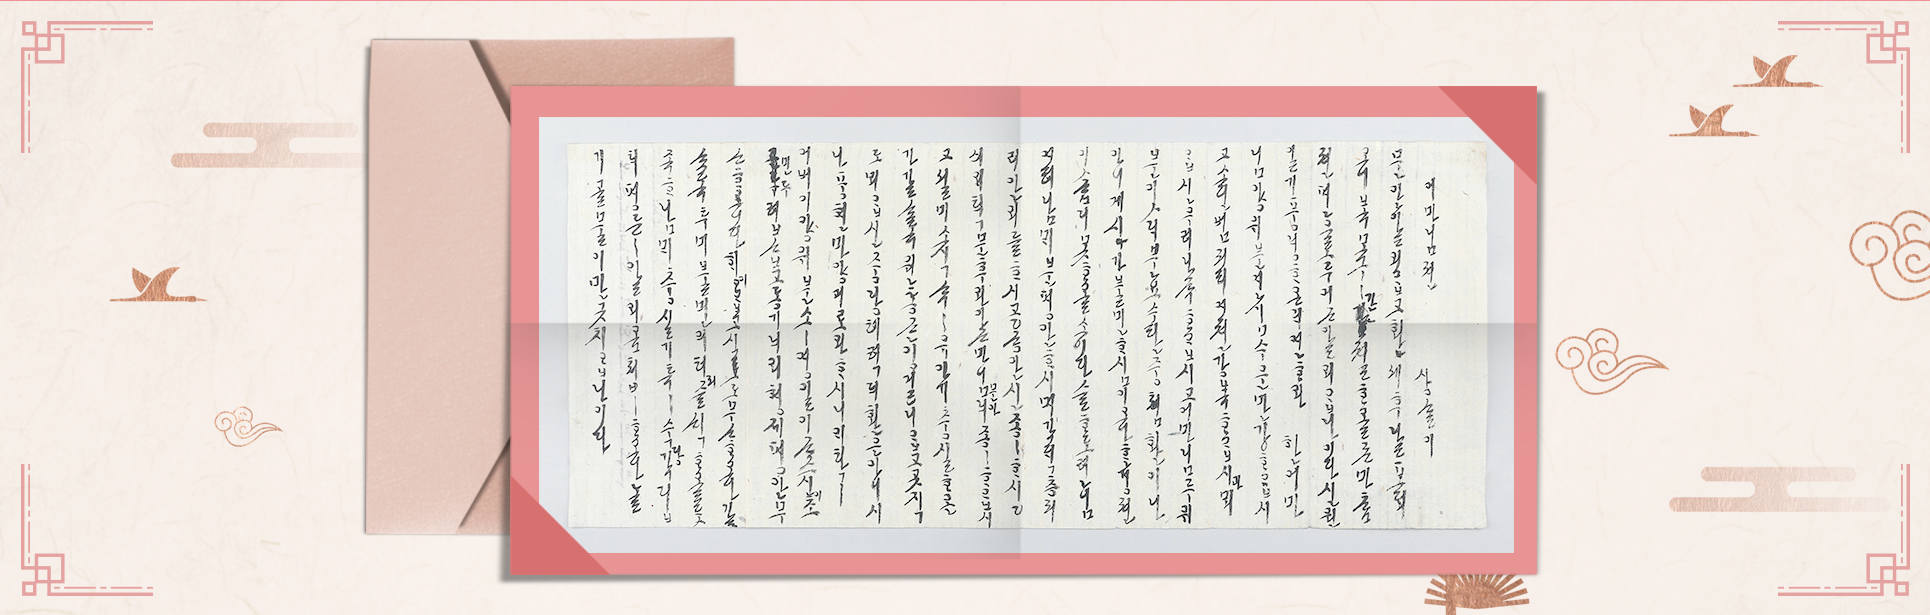 연분홍색의 전통 무늬 한지 위에 한글 편지 유물이 합성되어 있다. 편지는 진한 분홍색의 테두리로 꾸며졌다. 편지 뒤에는 연한 분홍색의 편지봉투가 놓여있다.